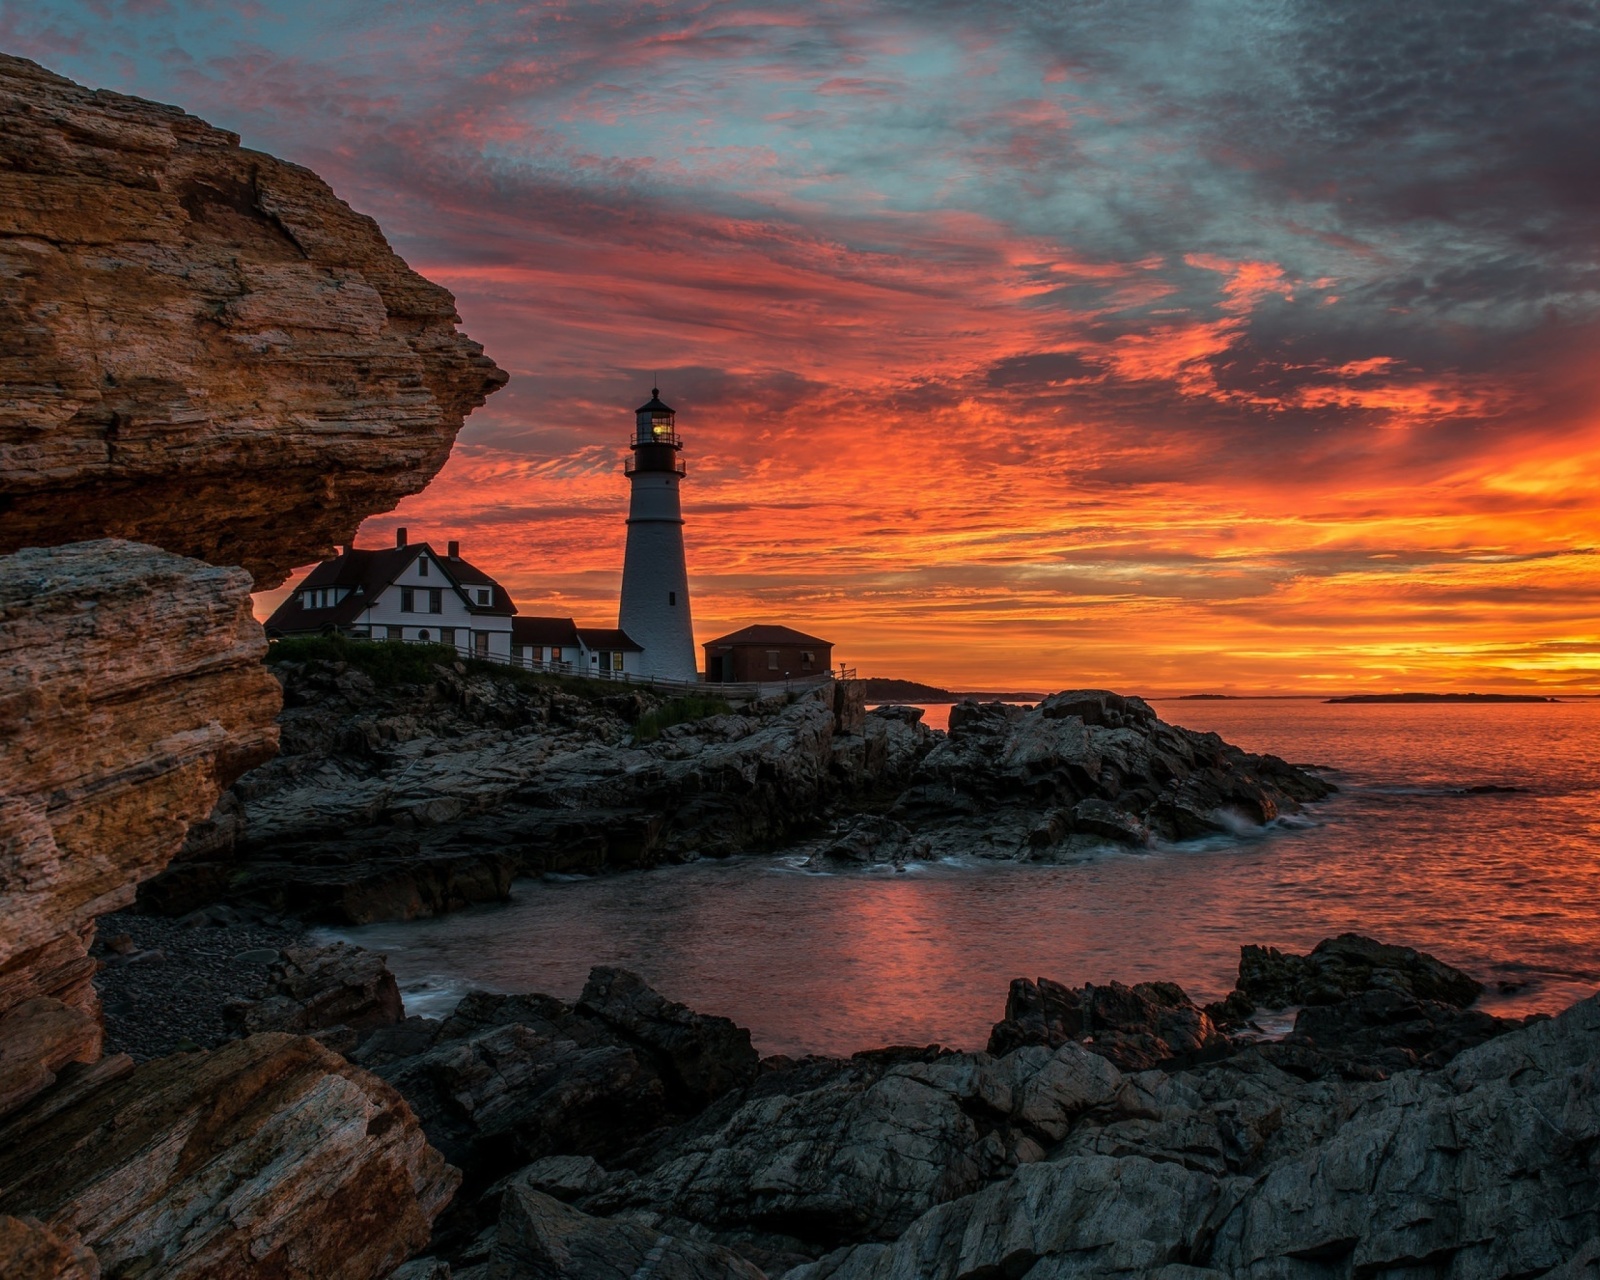 Обои Sunset and lighthouse 1600x1280